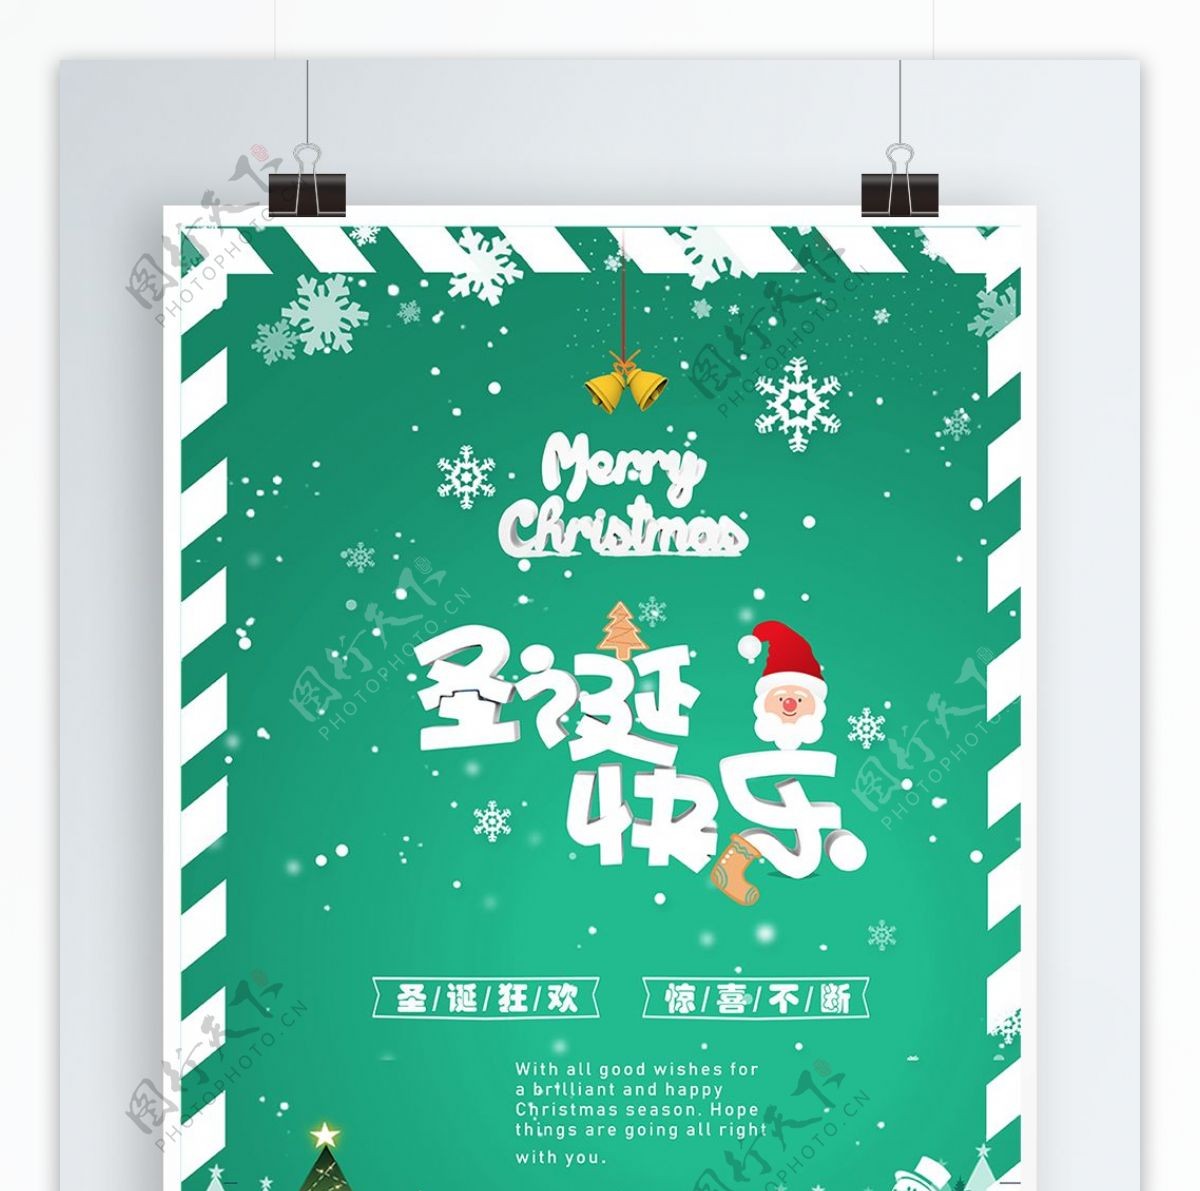 绿色清新可爱简约精致圣诞促销圣诞海报